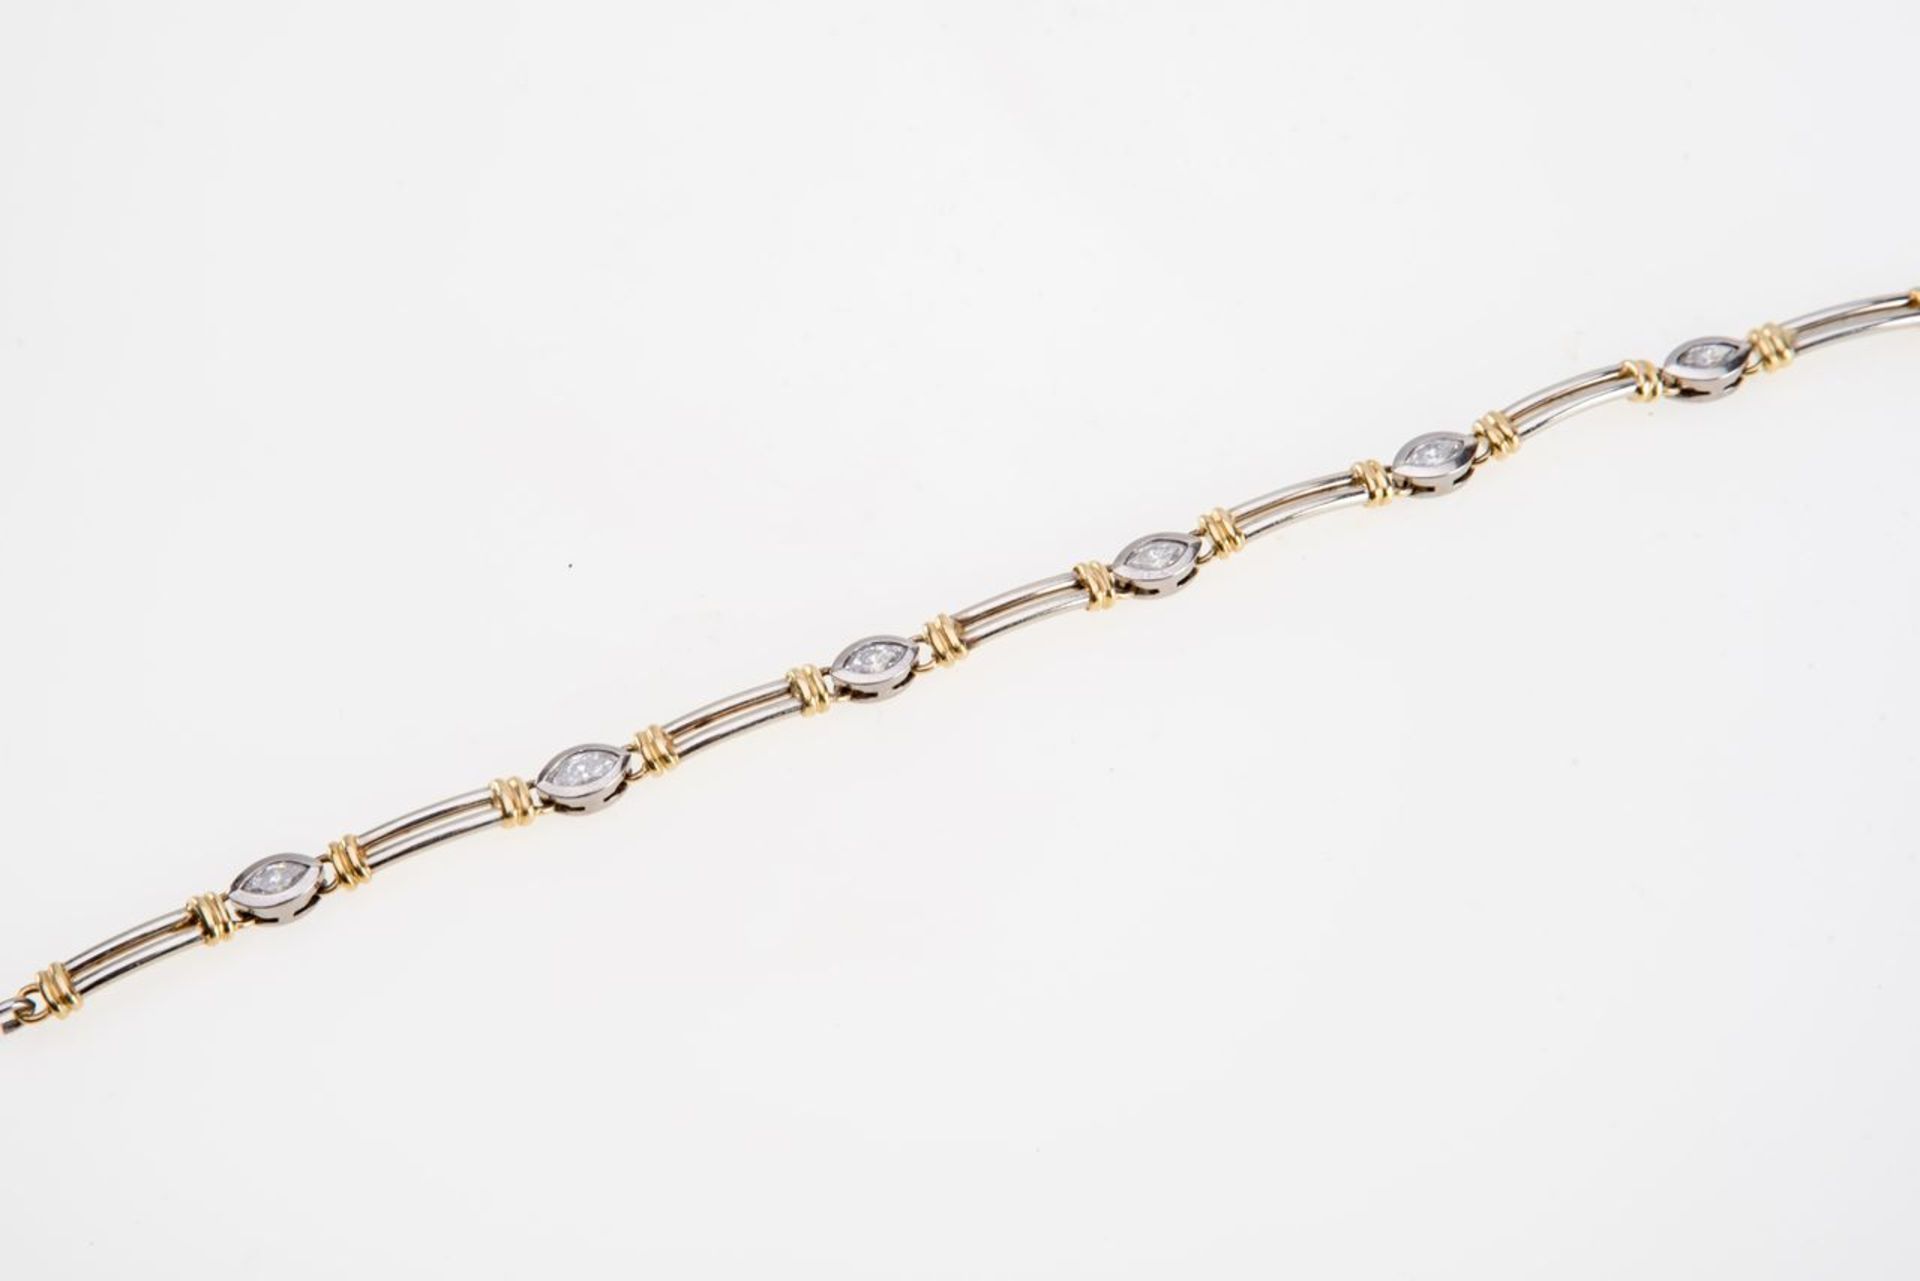 Armband mit Brillanten750er Gelbgold/Weißgold. Band aus paarig angeordneten Stäbchen, 6